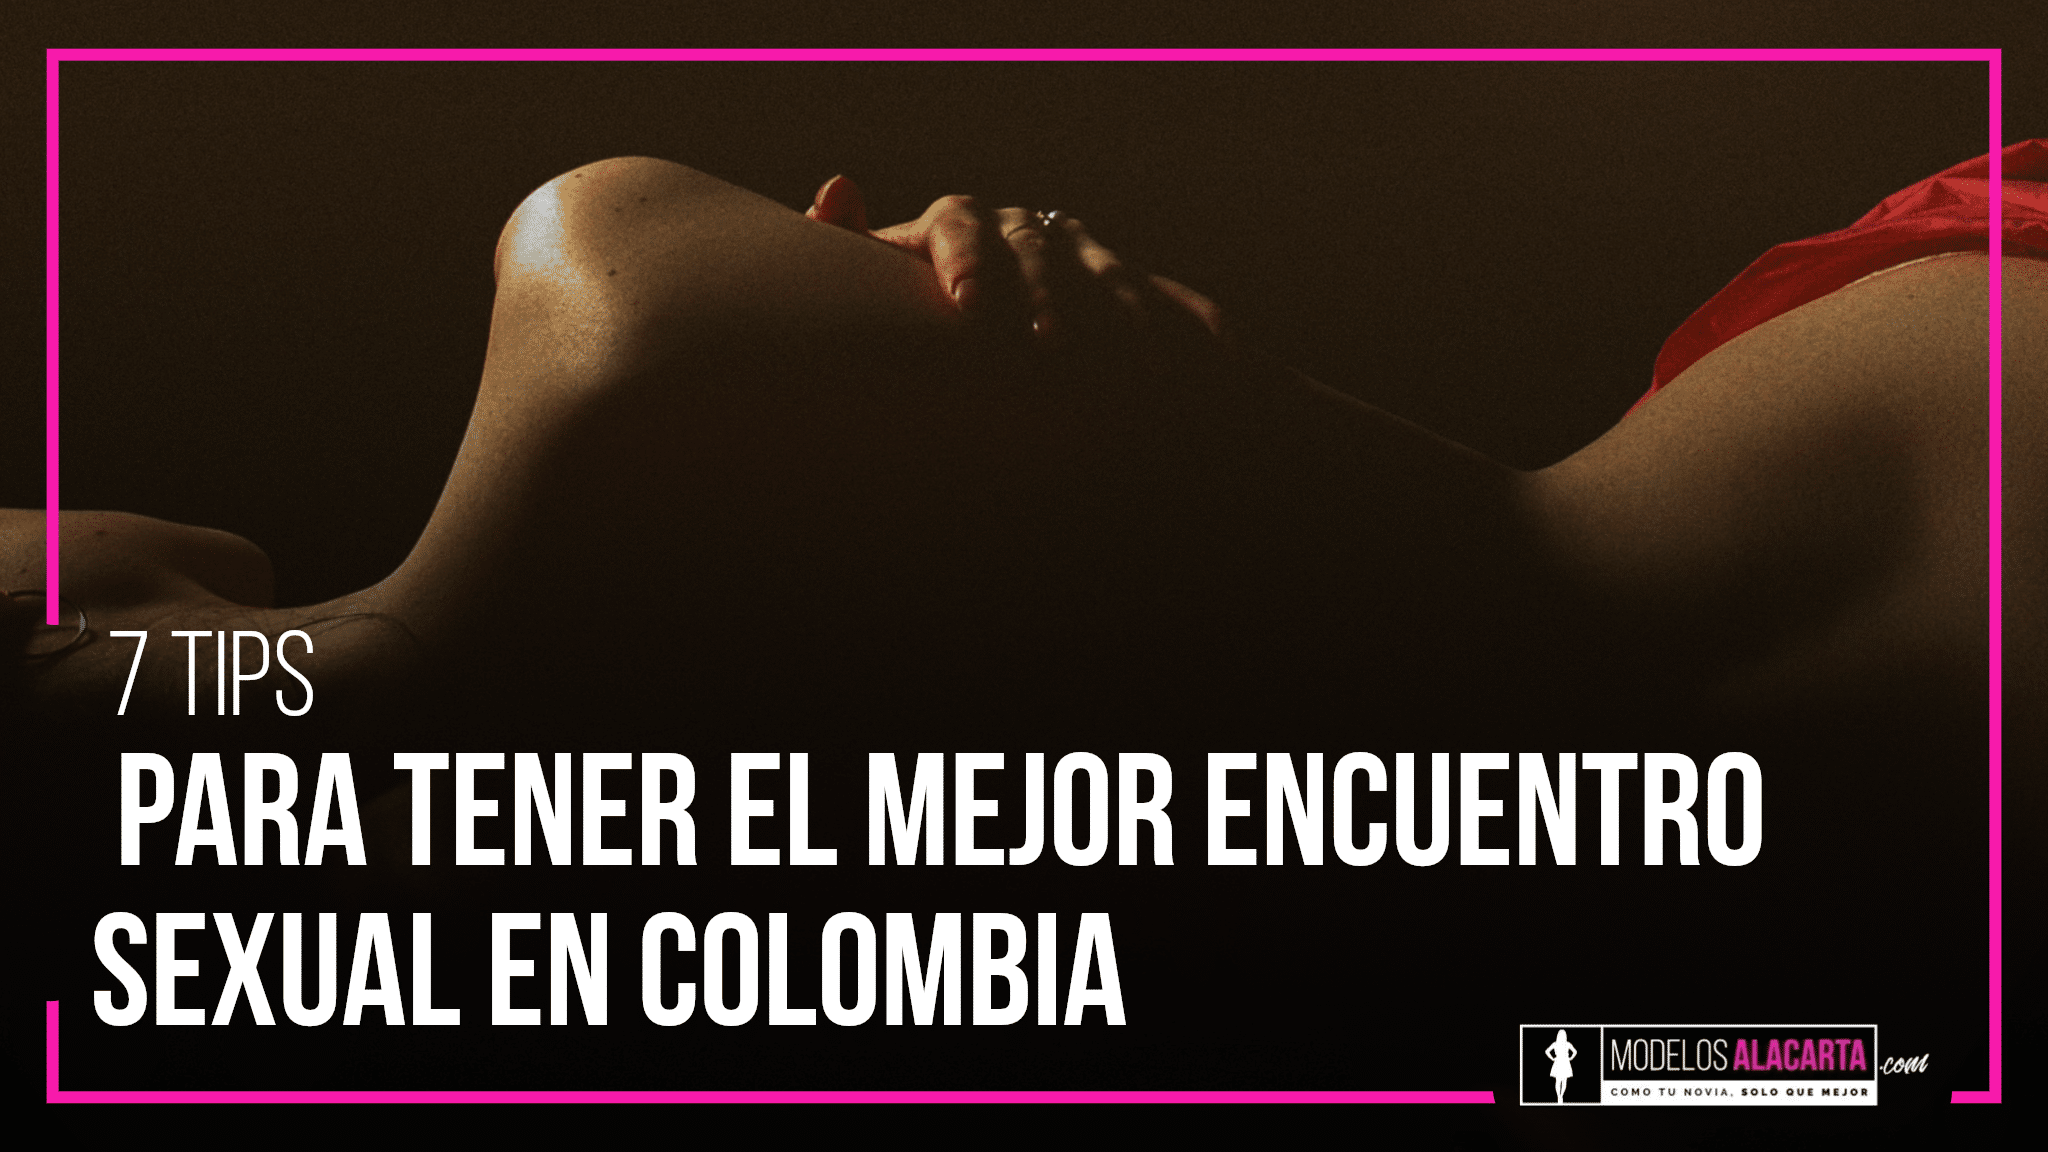 7 tips para tener el mejor encuentro sexual en Colombia